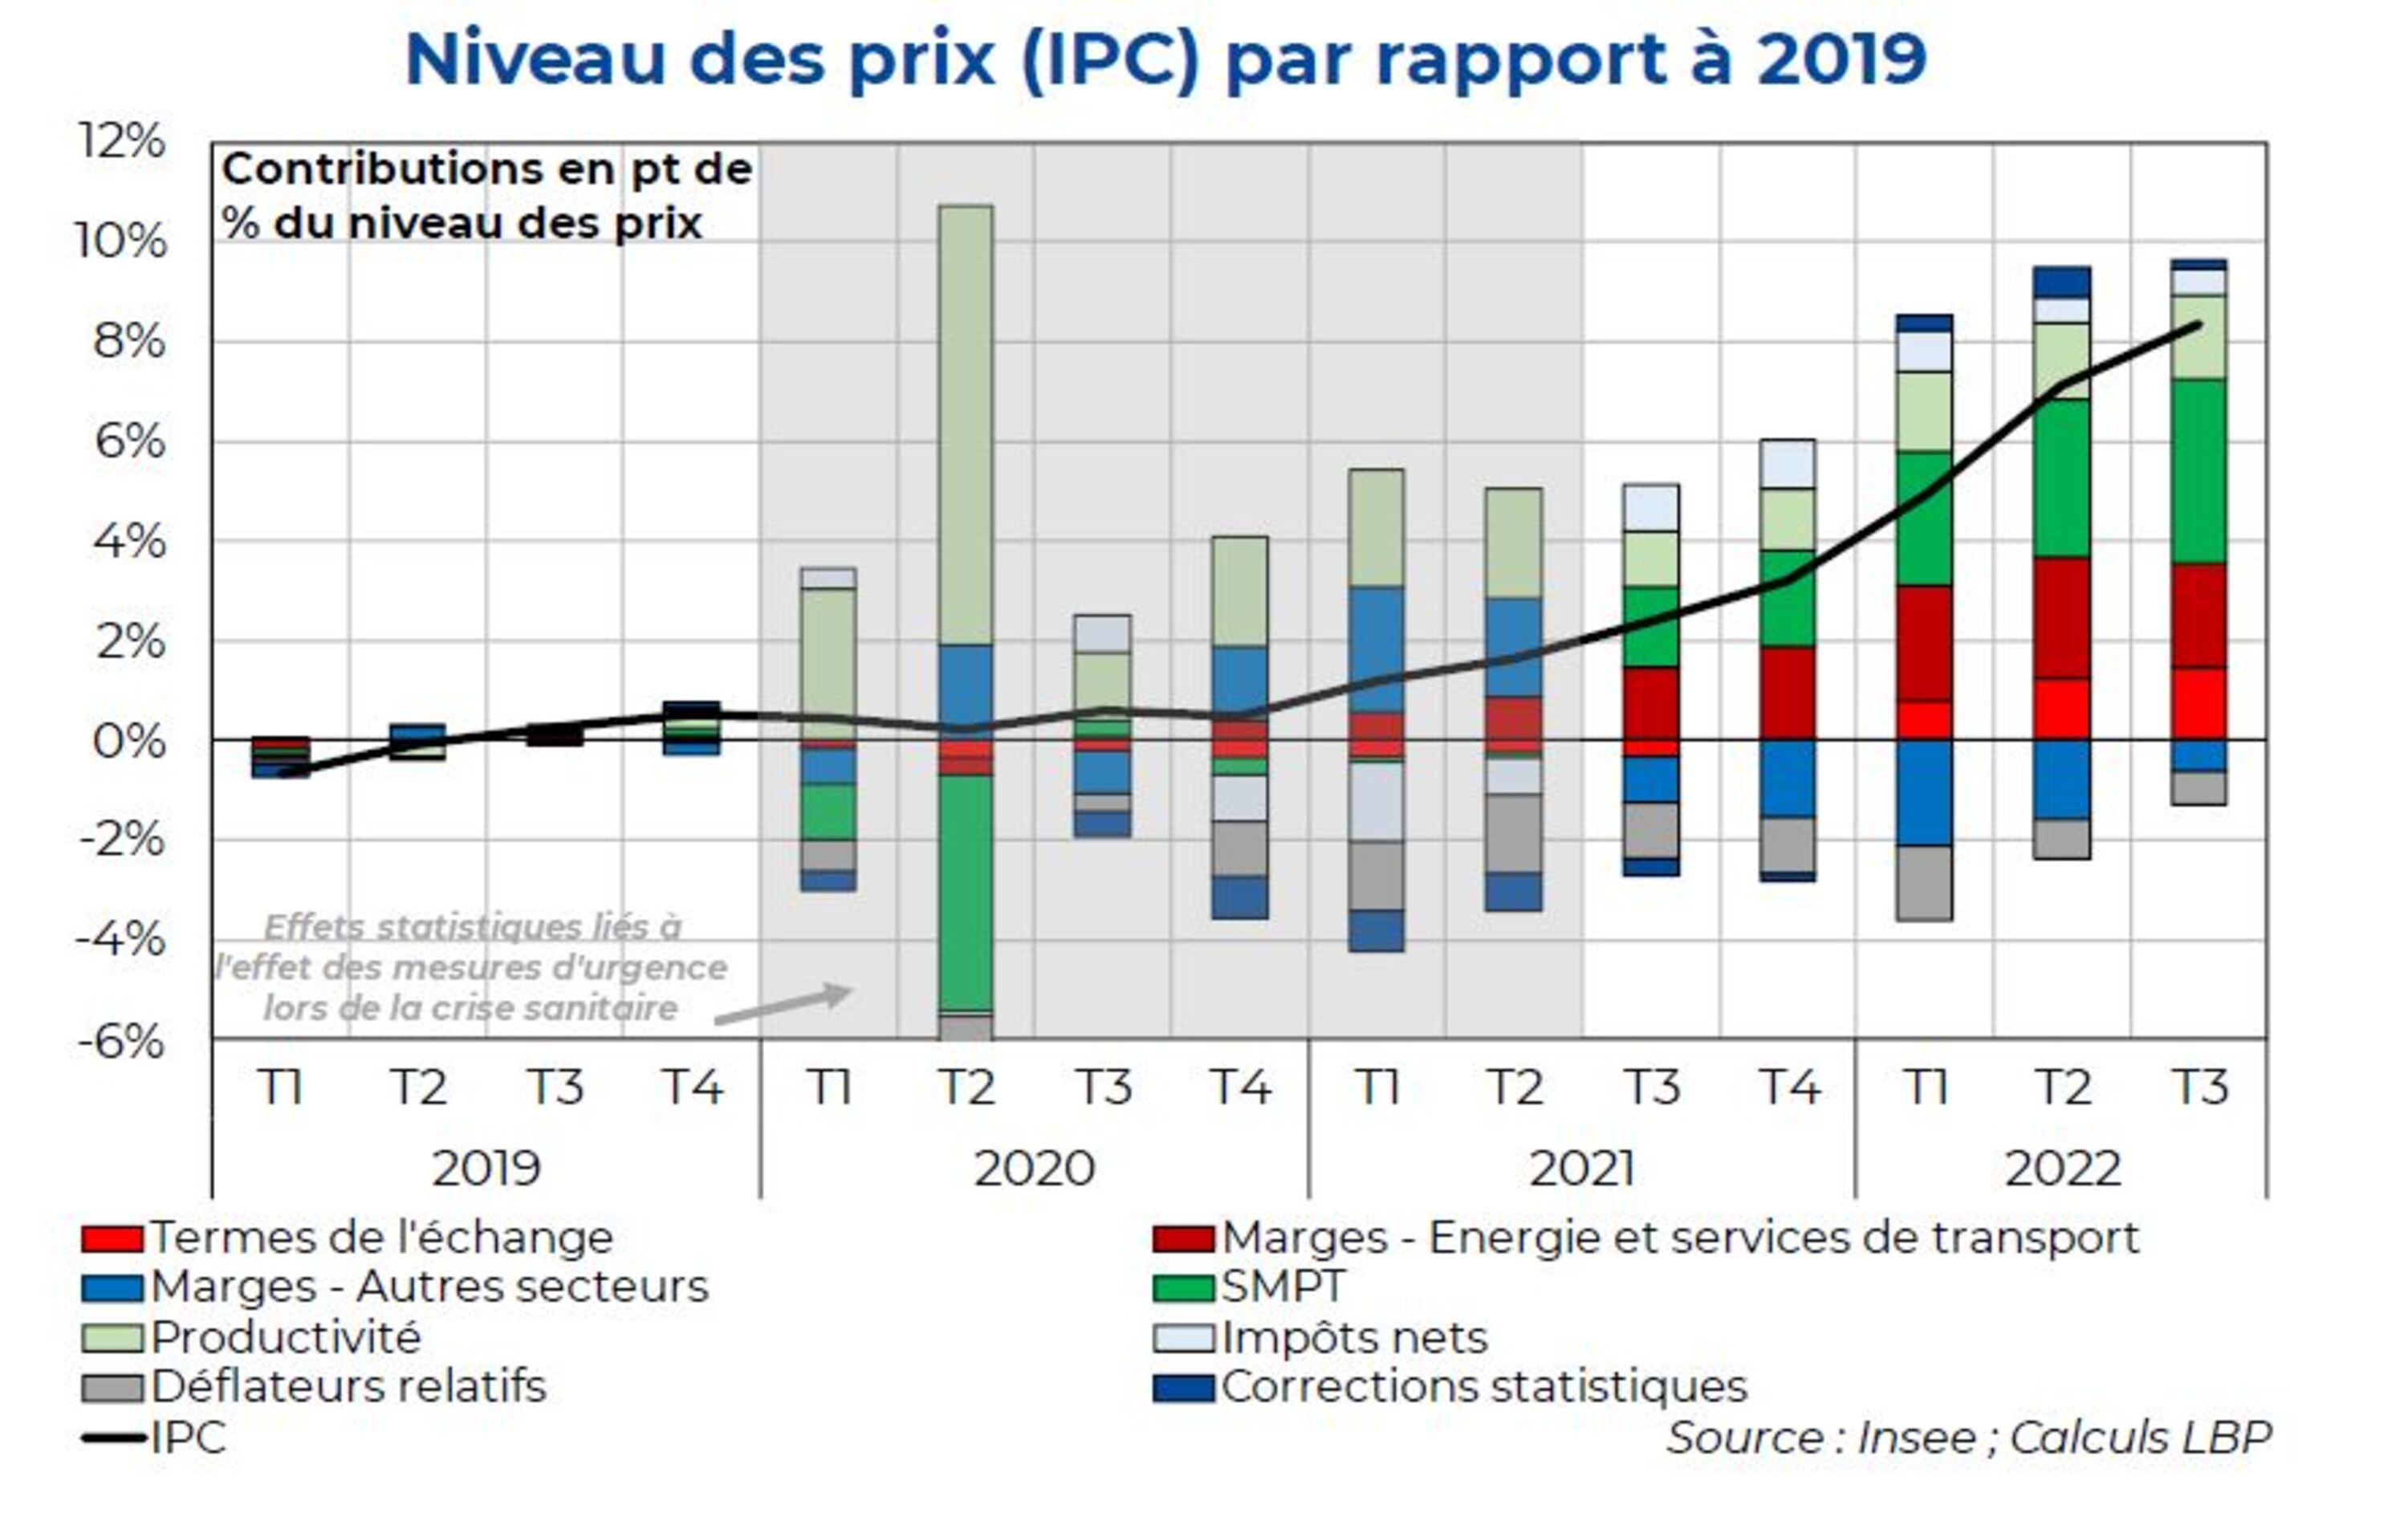 Faut-il craindre une spirale prix-salaire en France ? Illustration avec une courbe indiquant le niveau des prix par rapport à 2019.